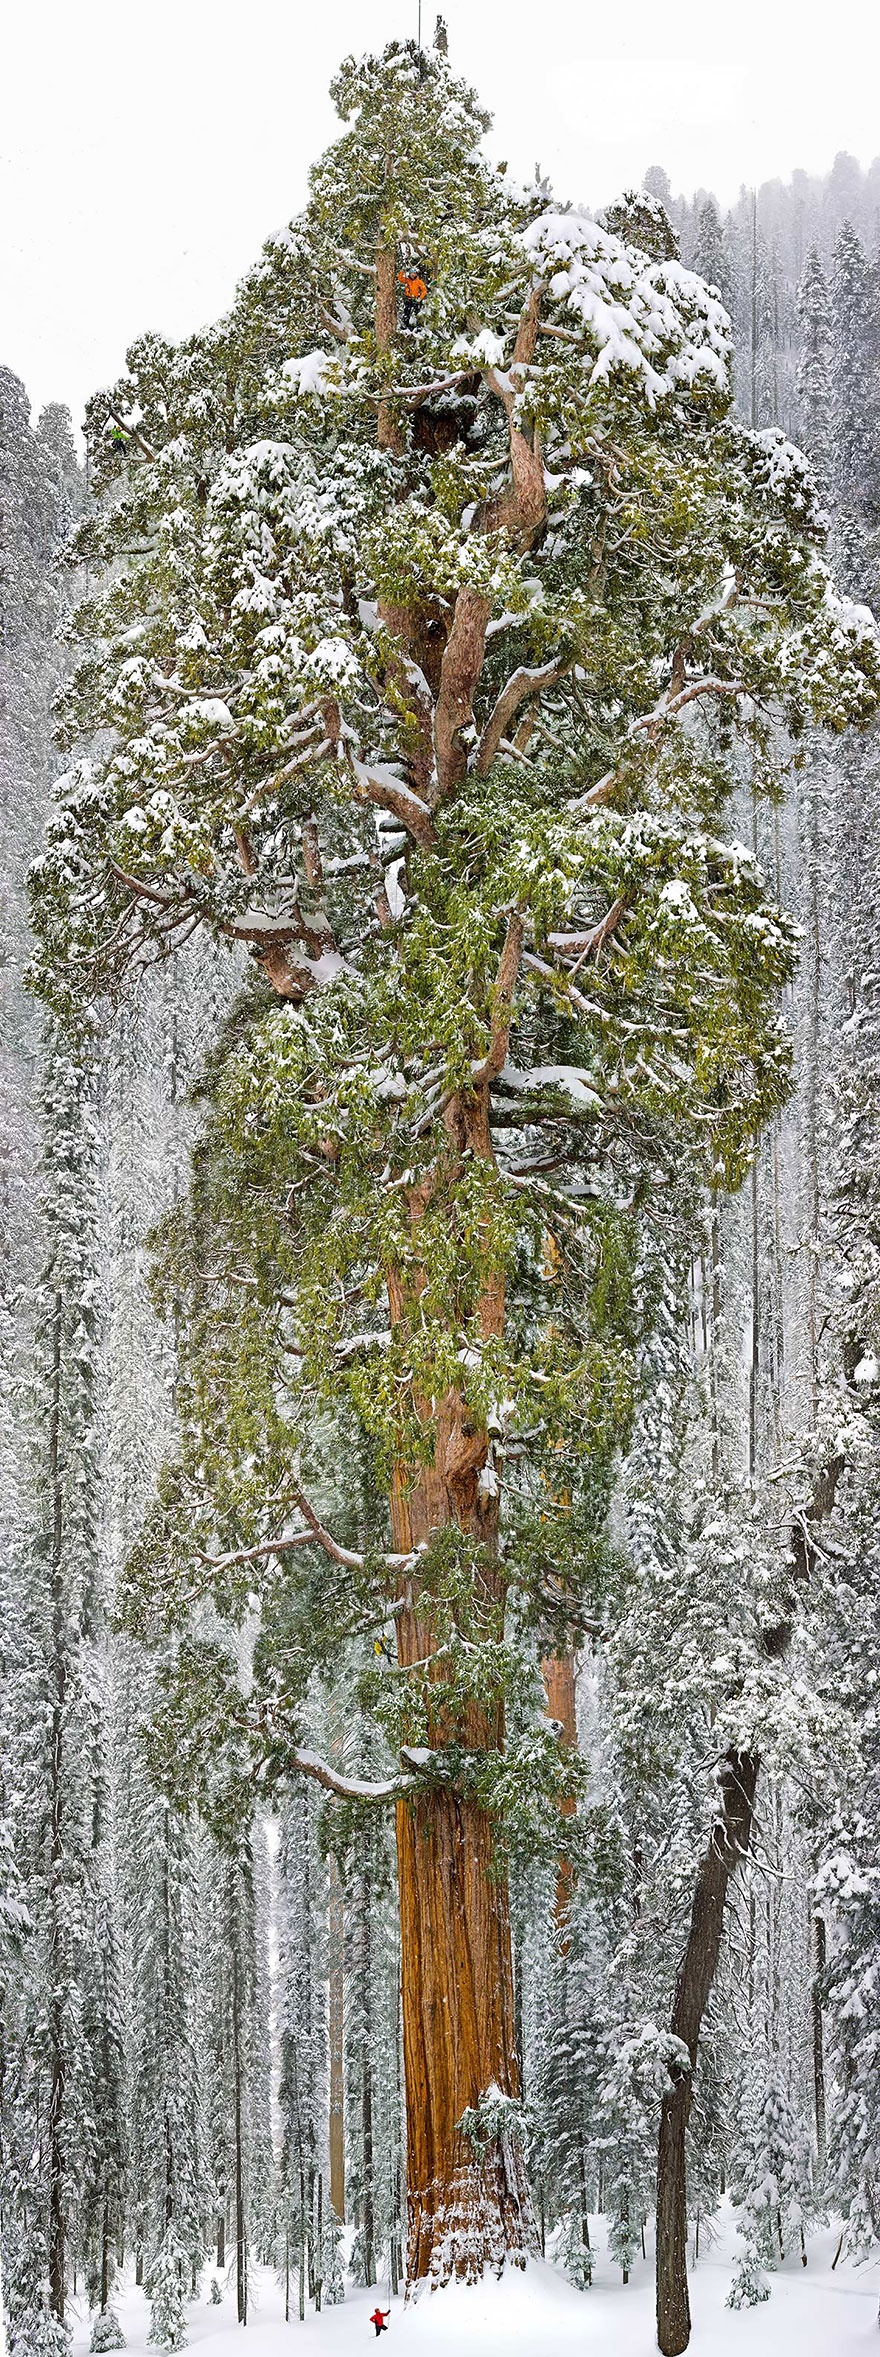 سومین درخت بزرگ جهان ( سکویای عظیم)، کالیفرنیا